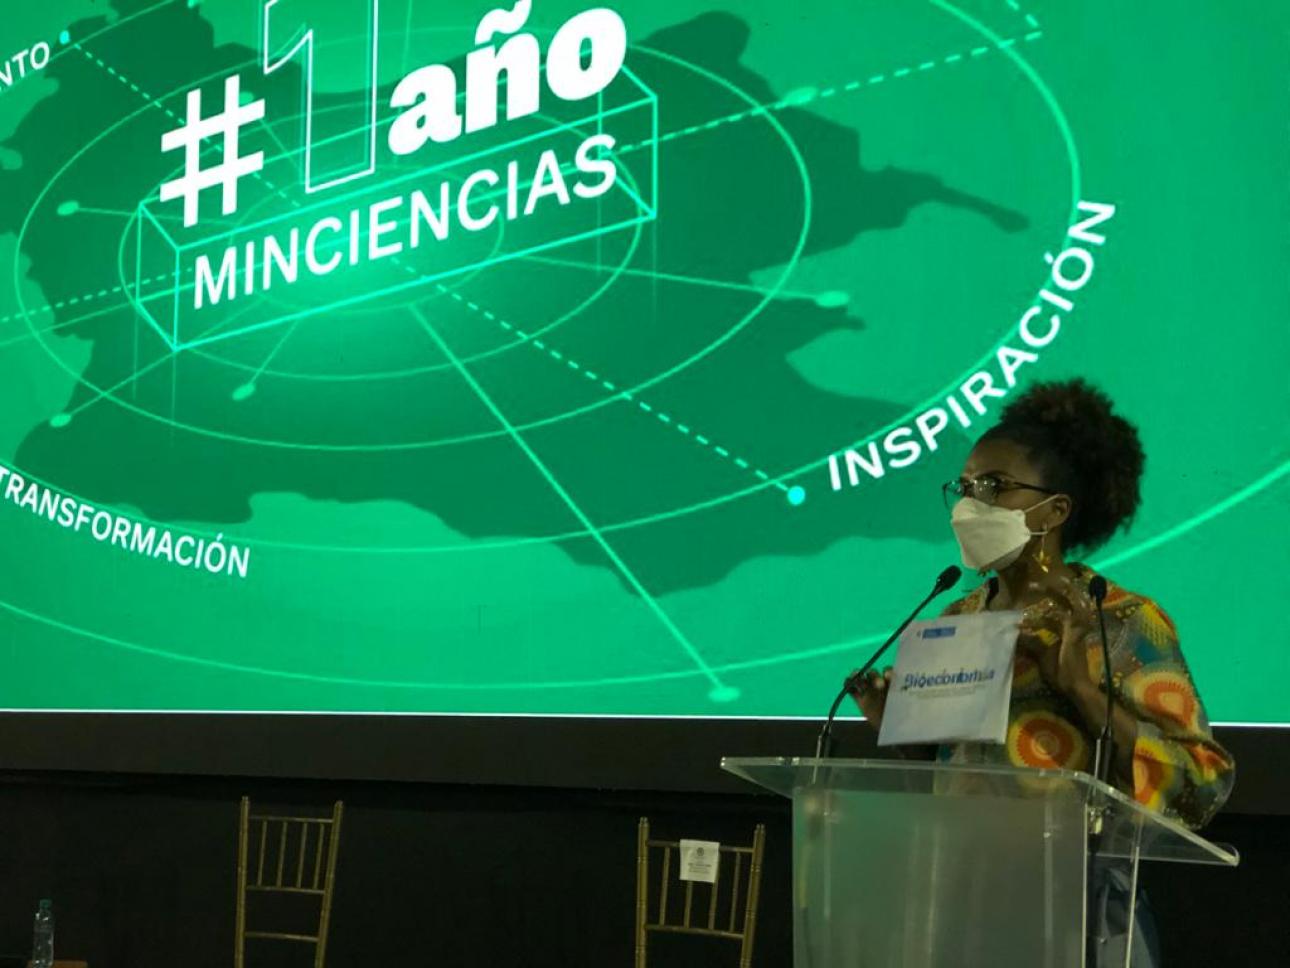 la ministra de Ciencia, Tecnología e Innovación, Mabel Gisela Torres, presentó el balance de gestión con los resultados y logros de esta nueva cartera que cumple un año desde su creación. 